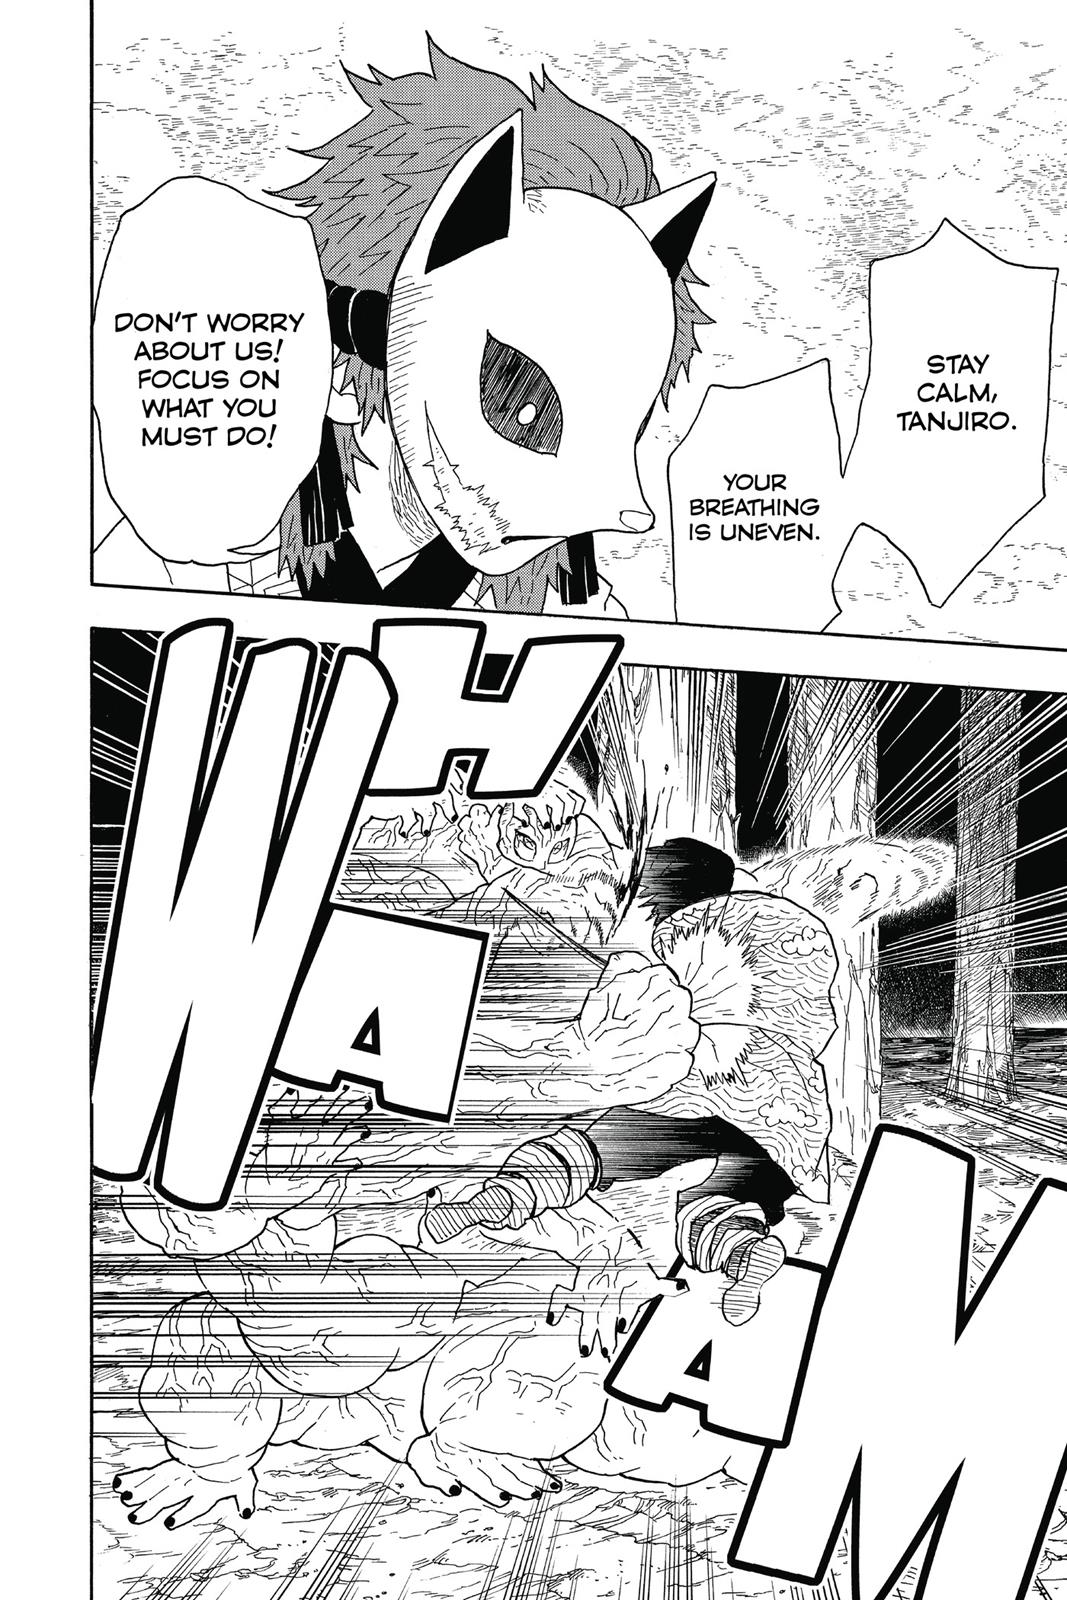 Demon Slayer Manga Manga Chapter - 7 - image 11